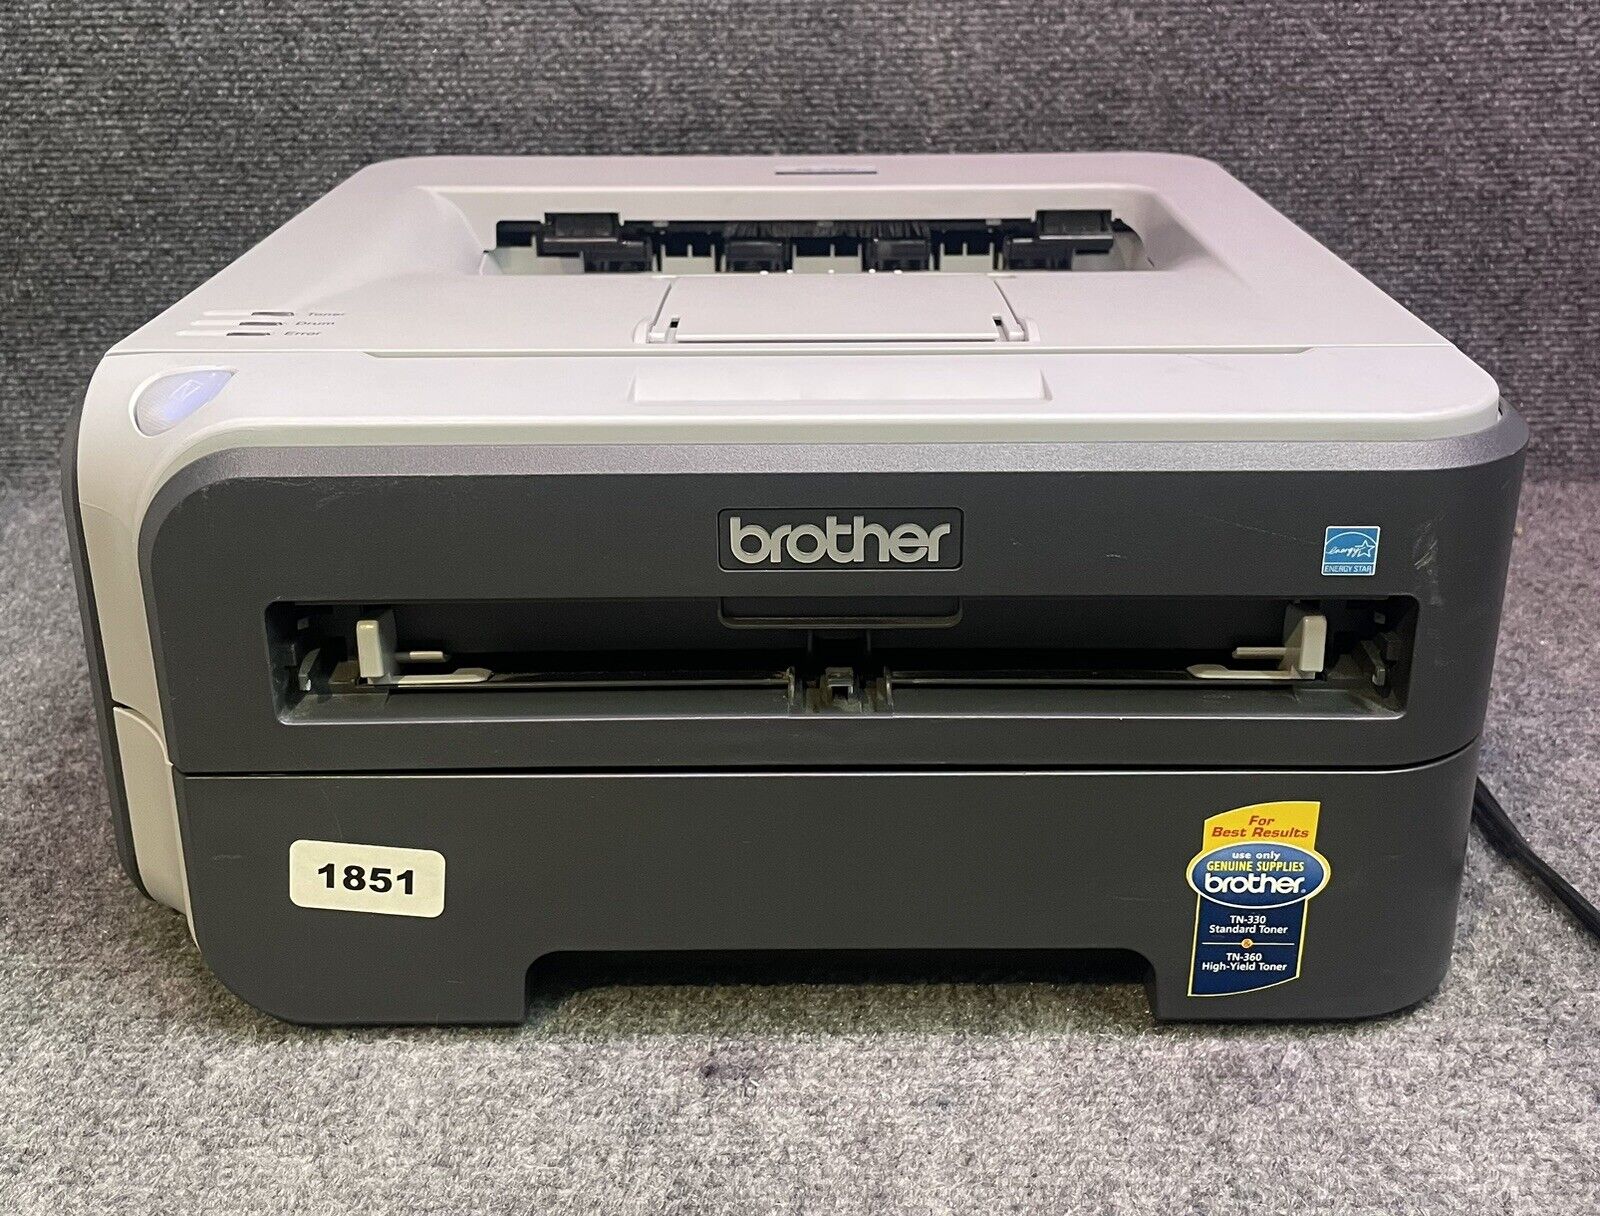 Brother HL-2140 Standard Monochrome Laser Printer